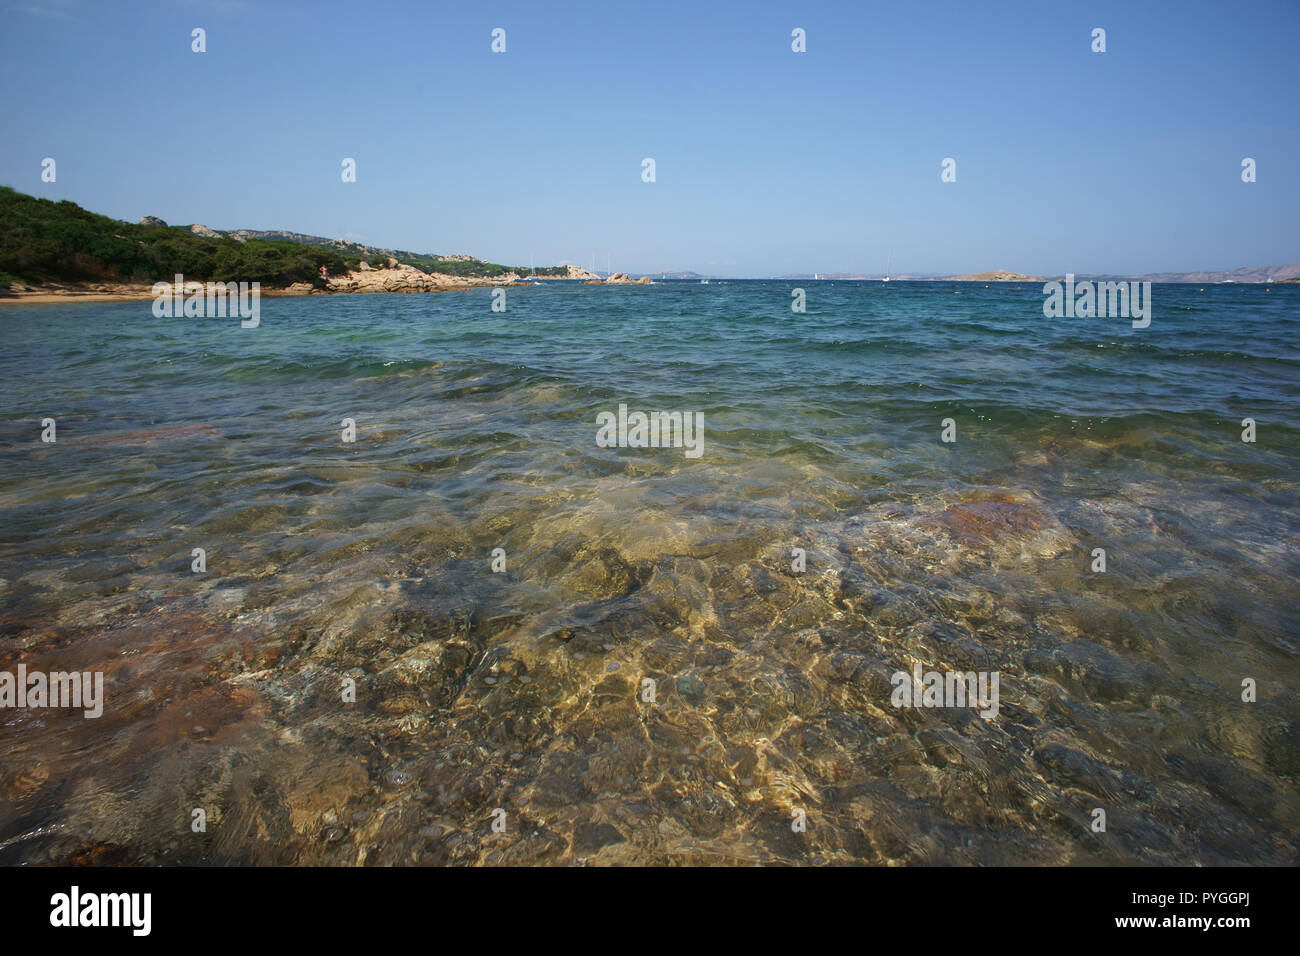 Liscia vacca beach, costa smeralda, Sardinia, italy Stock Photo